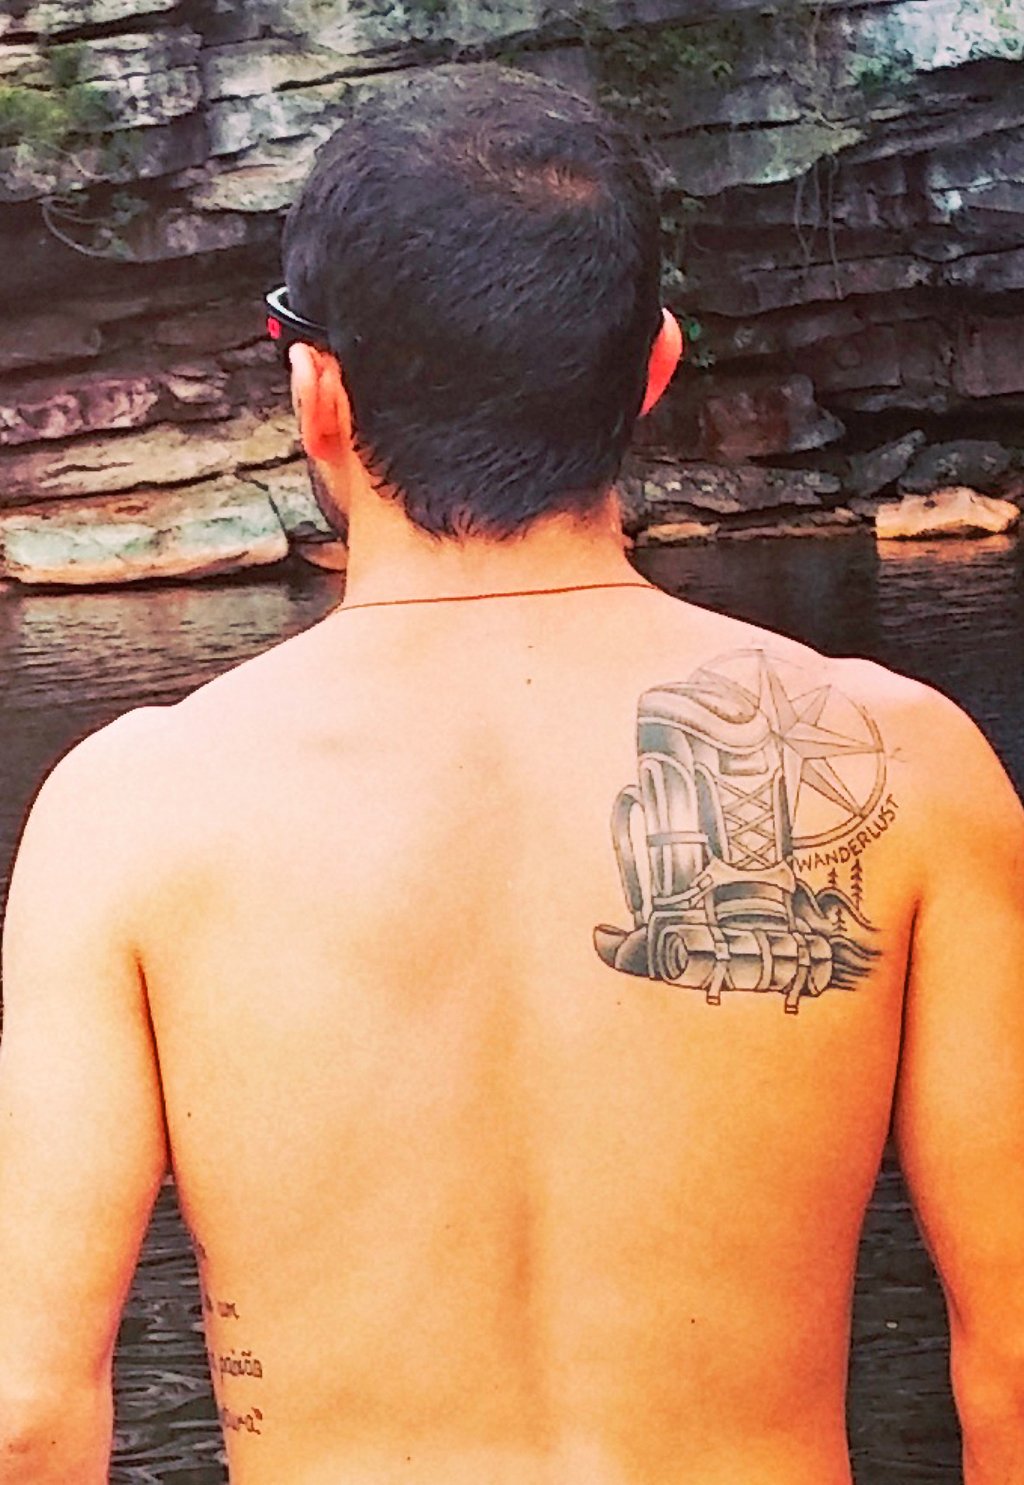 "Me mantendo sempre com a mochila nas costas" - risos. Com esse bom humor, Bruno Gomes mandou a foto de sua tattoo pra gente | Foto: Arquivo pessoal.